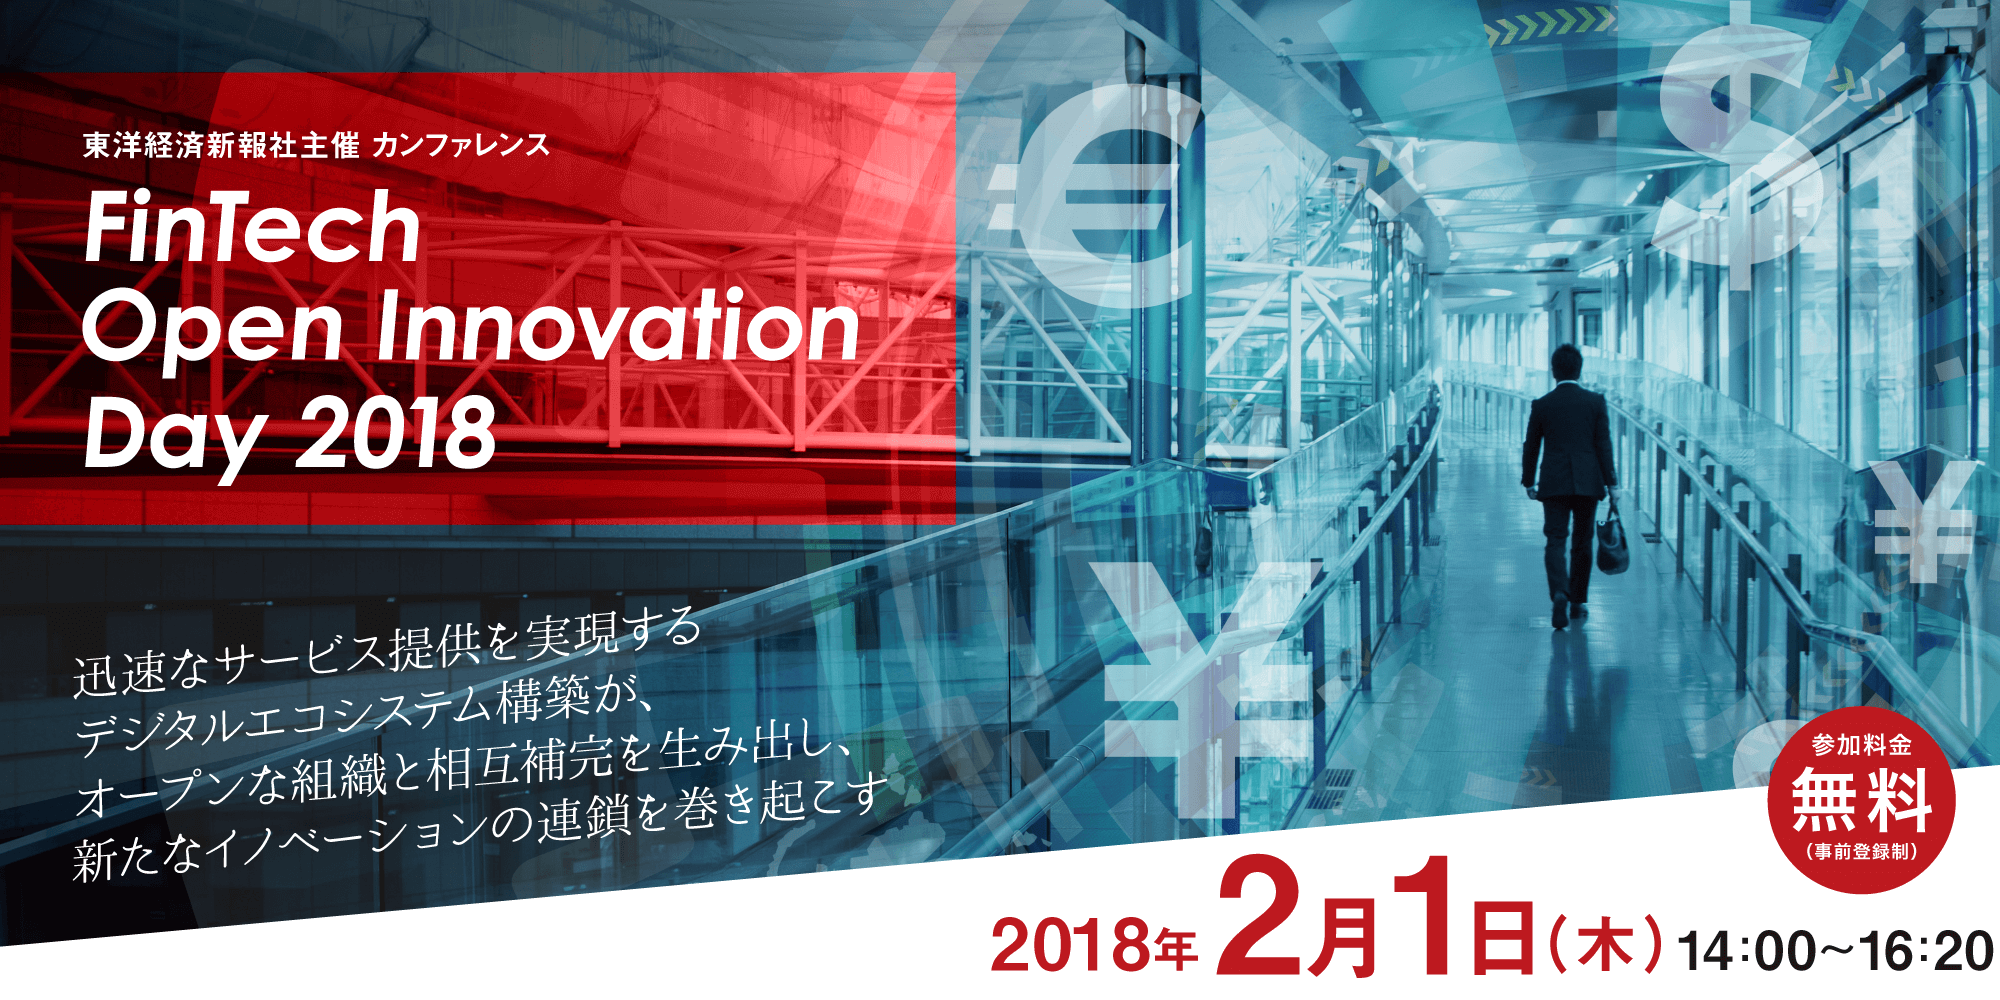 FinTech Open Innovation Day 2018